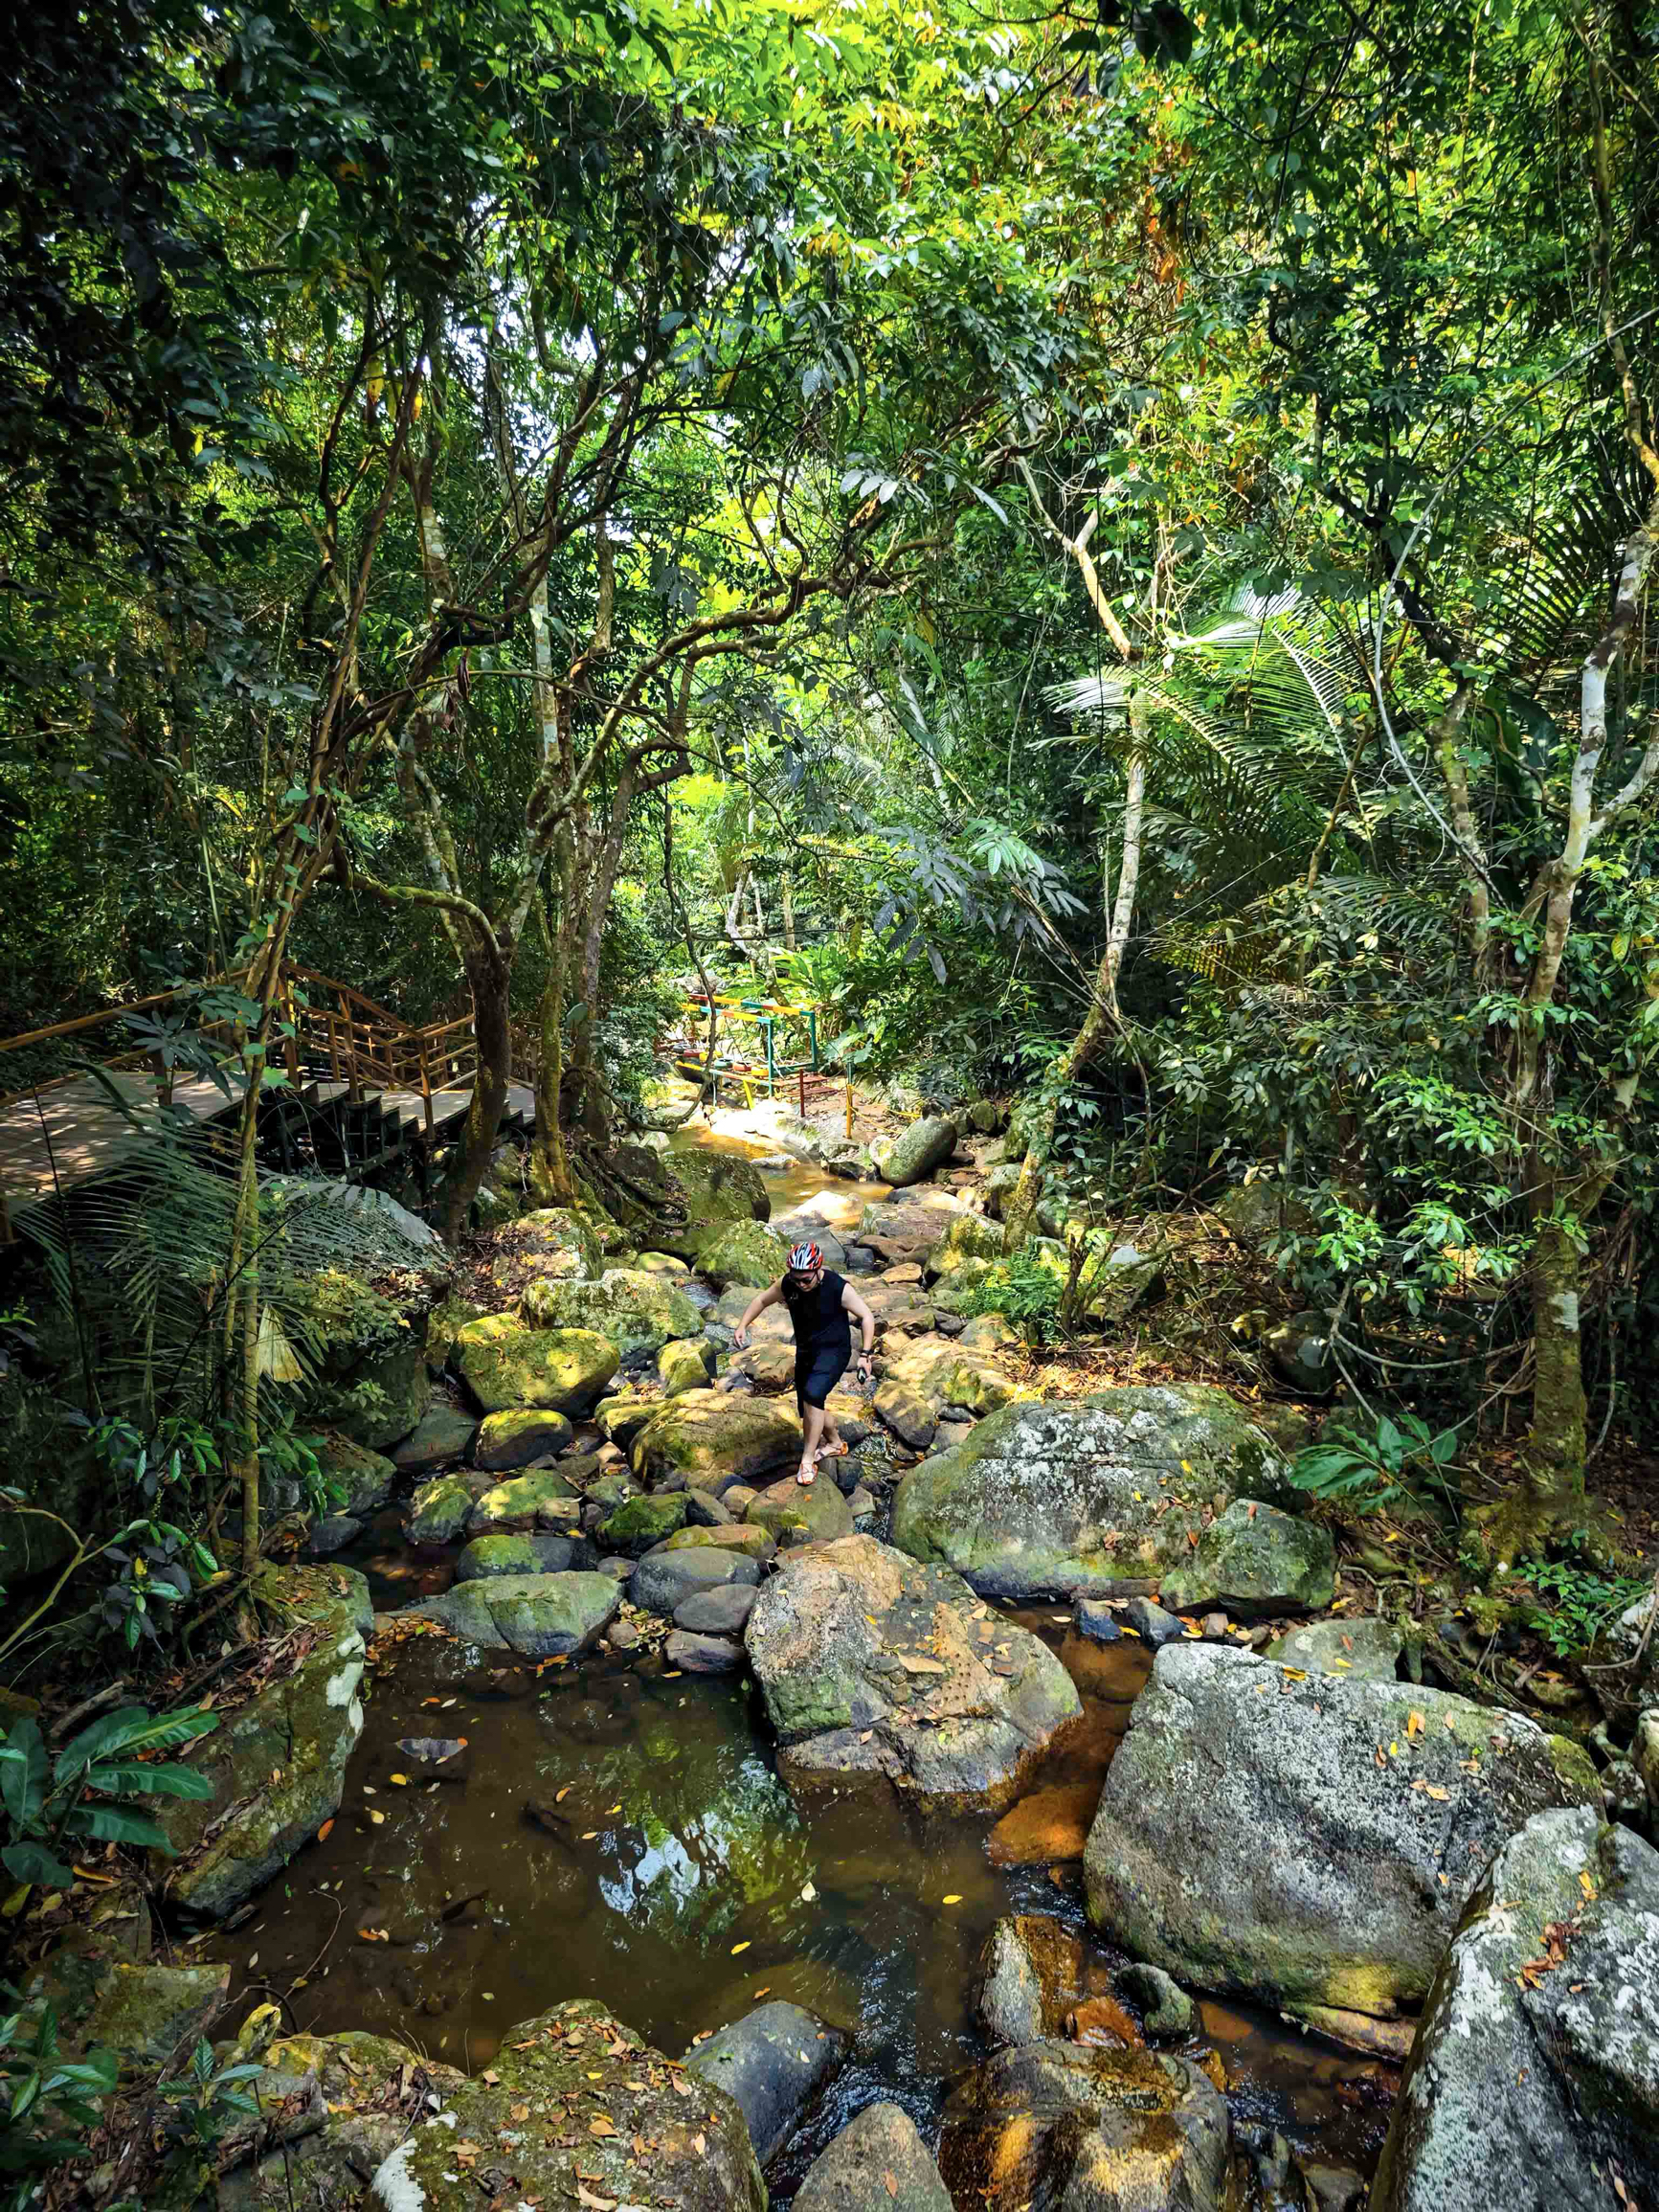 后悔没早点发现，海南的这处可以徒步的宝藏热带雨林